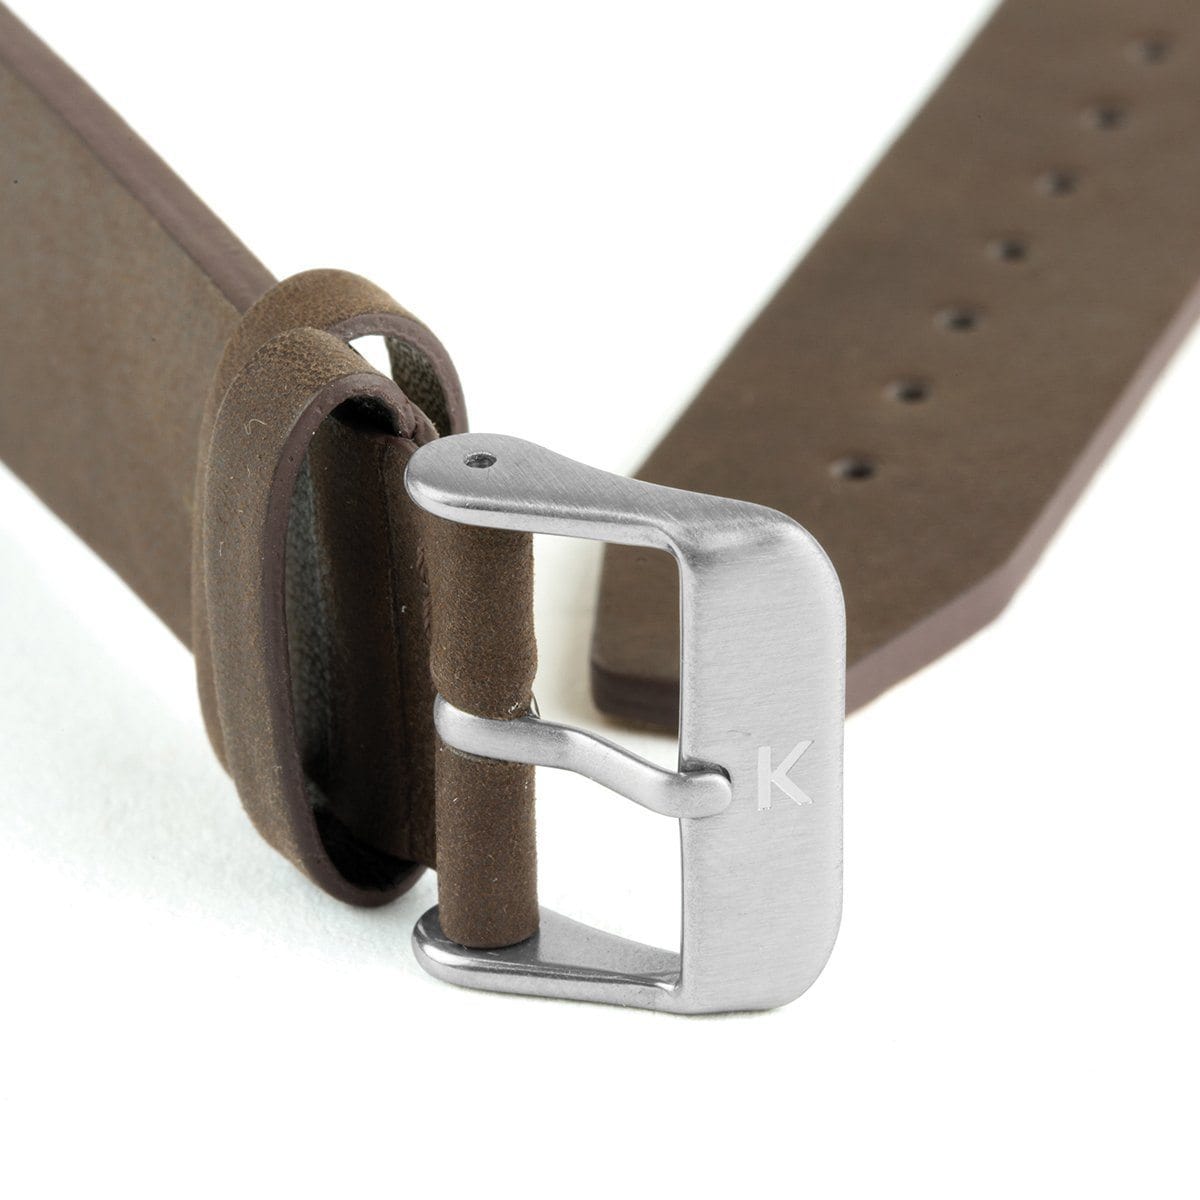 Dark Brown Flat Leather Watch Strap - 20mm Width Watch Strap - Kartel Scotland